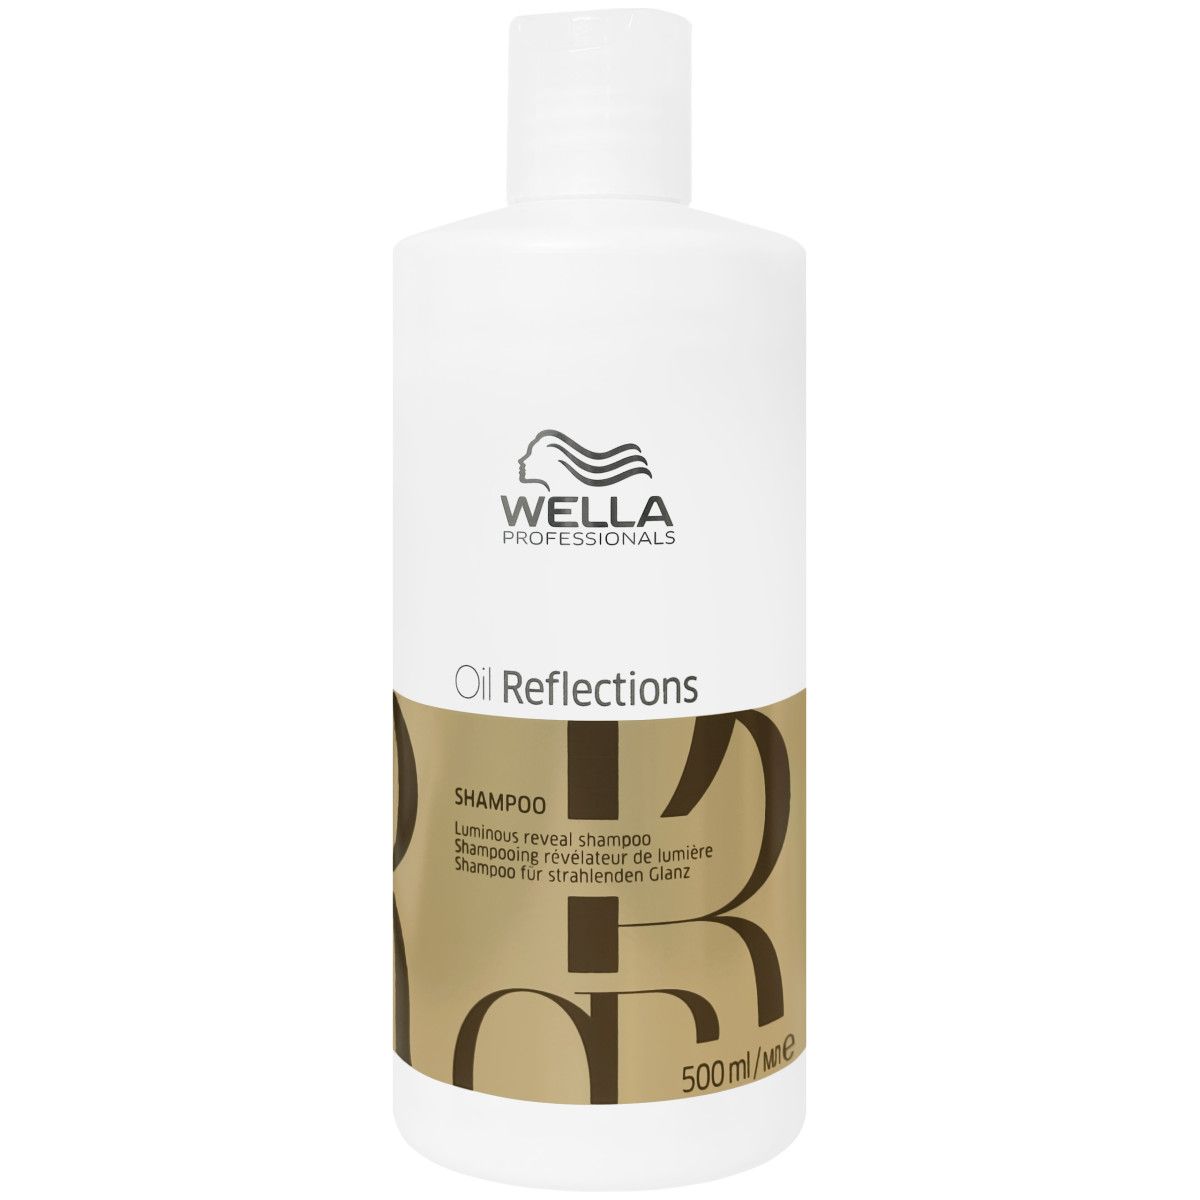 Wella Reflections Oil Shampoo - szampon rozświetlający do włosów, 500ml